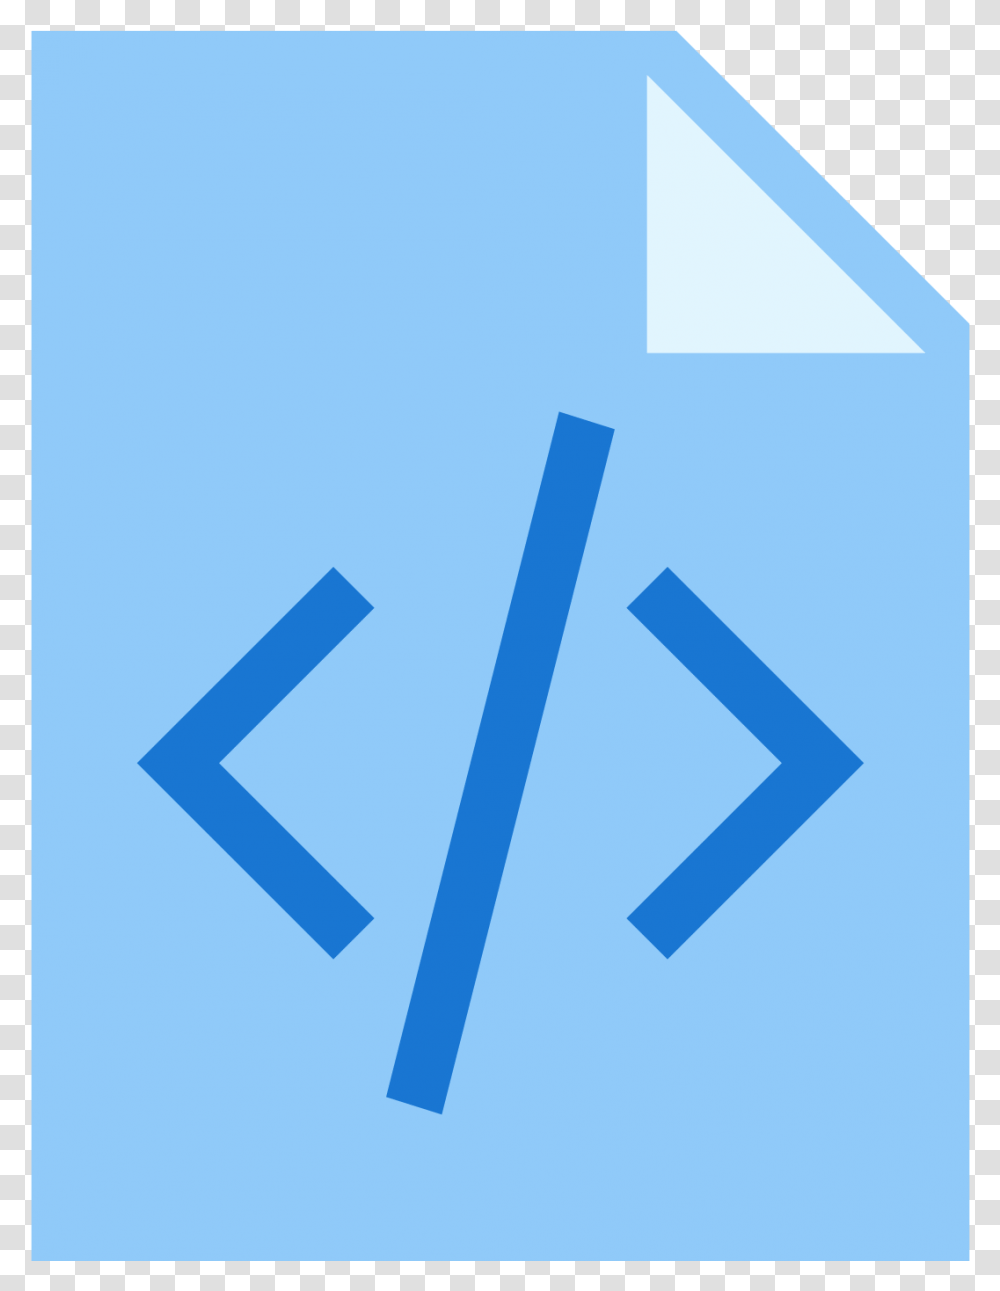 Chrome Dev Tools Logo, Metropolis, City, Urban, Building Transparent Png